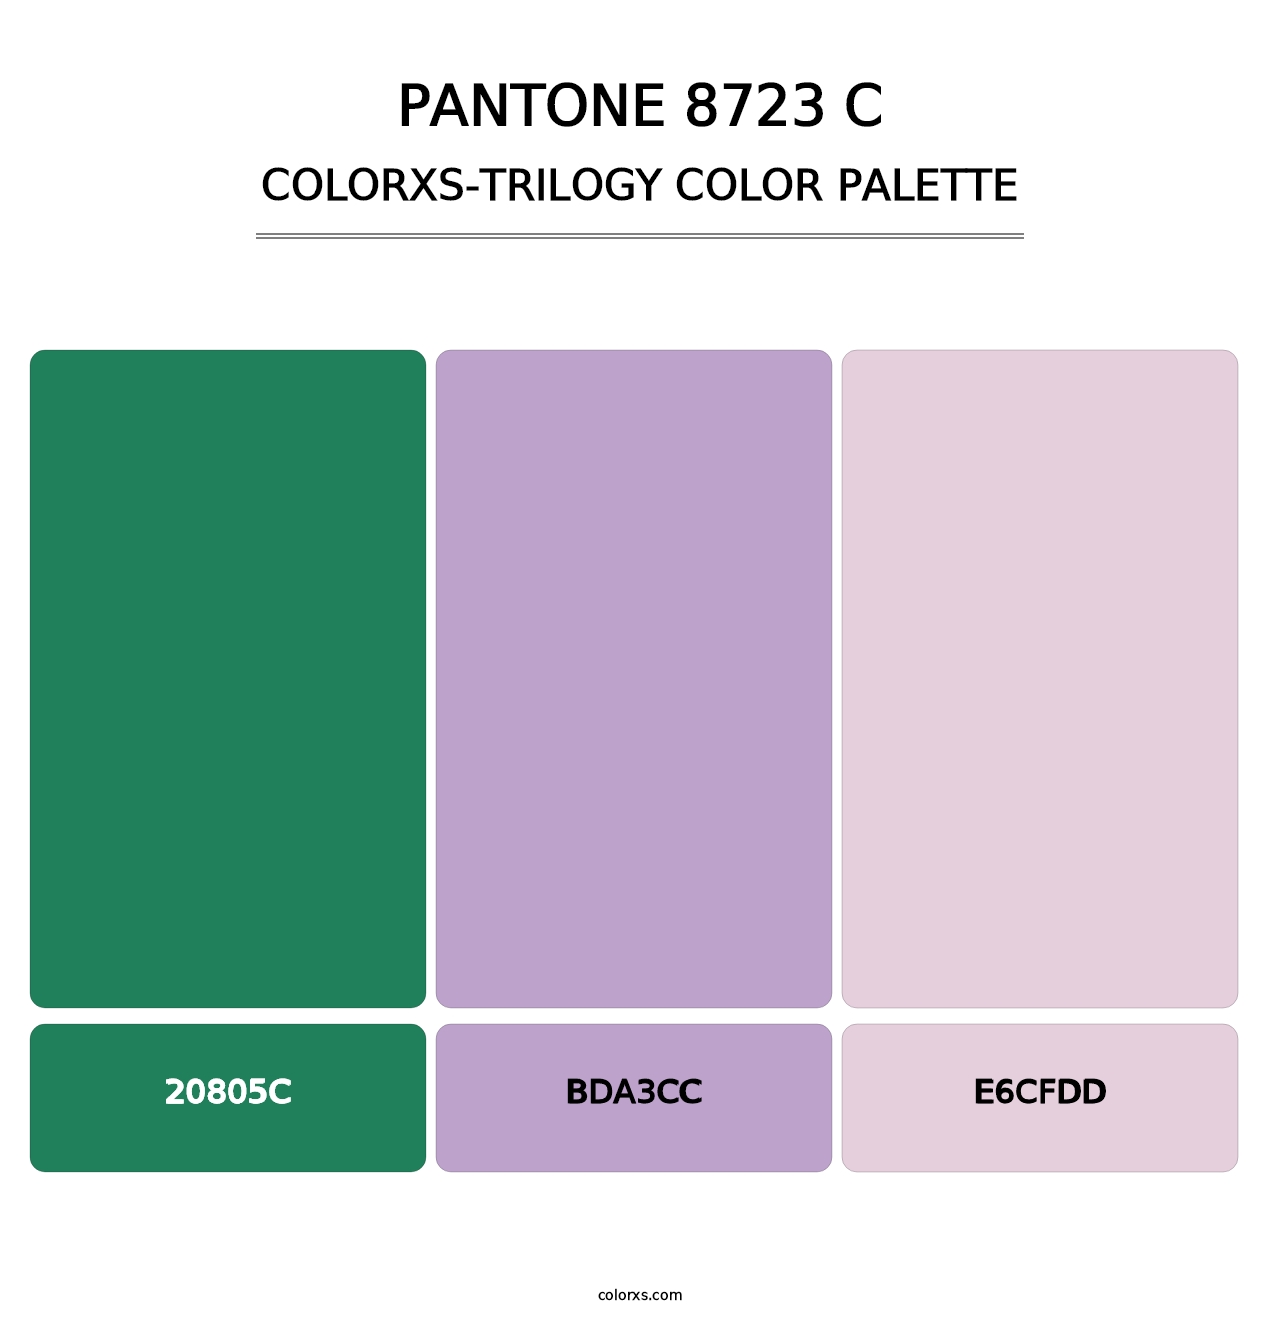 PANTONE 8723 C - Colorxs Trilogy Palette